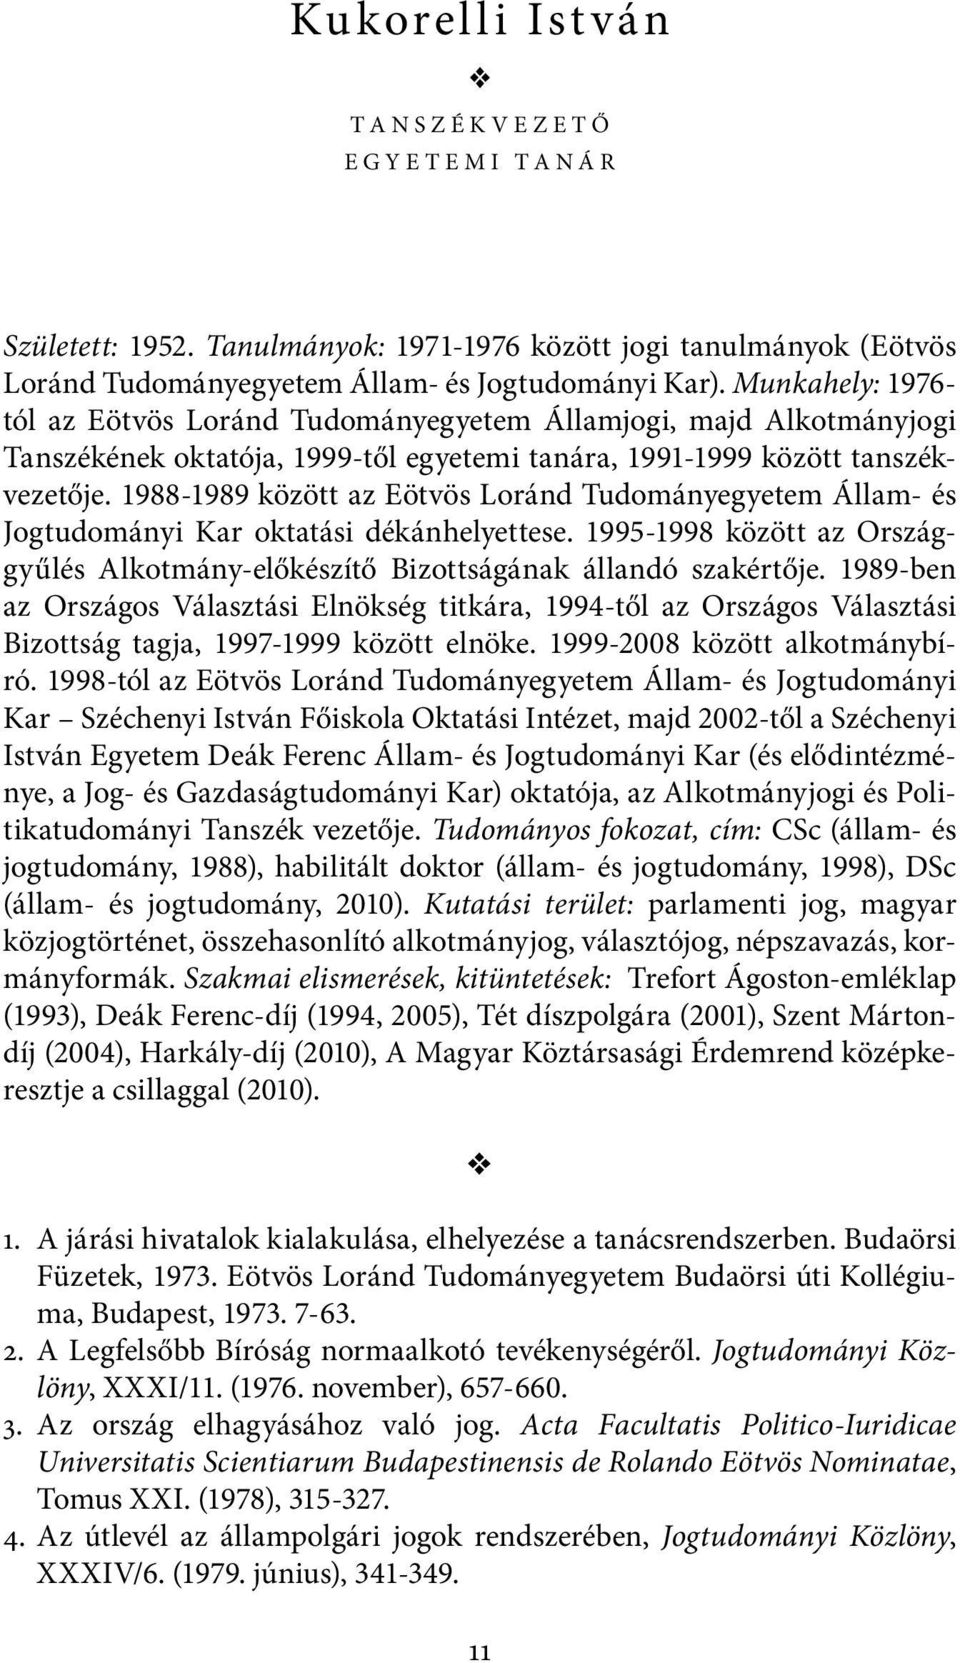 1988-1989 között az Eötvös Loránd Tudományegyetem Állam- és Jogtudományi Kar oktatási dékánhelyettese. 1995-1998 között az Országgyűlés Alkotmány-előkészítő Bizottságának állandó szakértője.